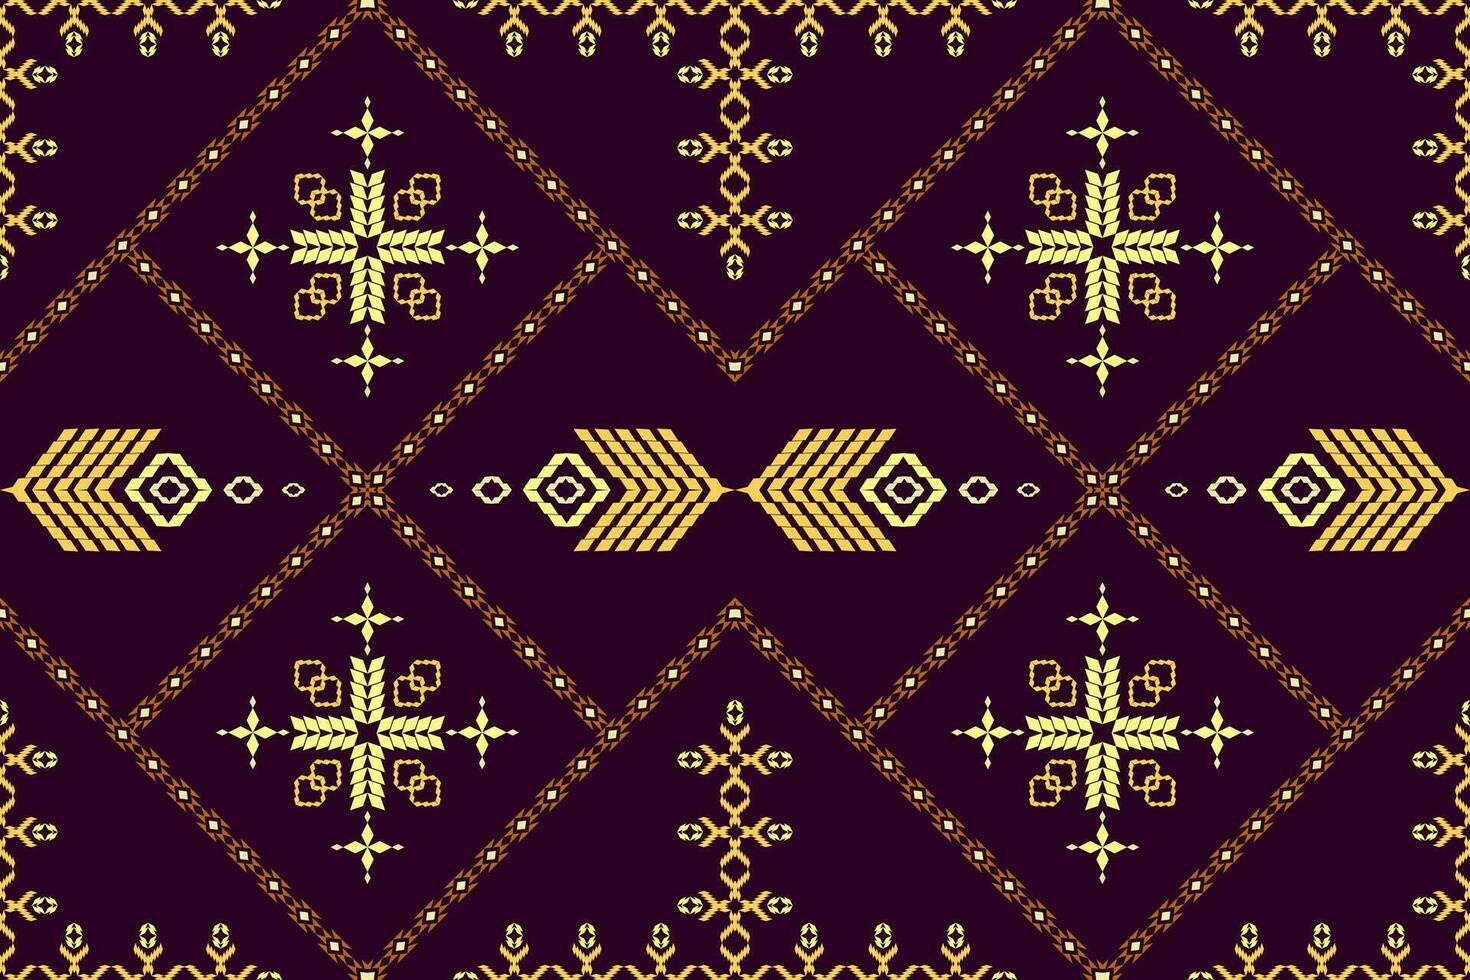 nativo ikat tessuto.azteco geometic arte ornamento design per moquette, carta da parati, abbigliamento, avvolgimento, tessile.damasco stile modello per tessile e decorazione.senza soluzione di continuità modello nel tribale. vettore